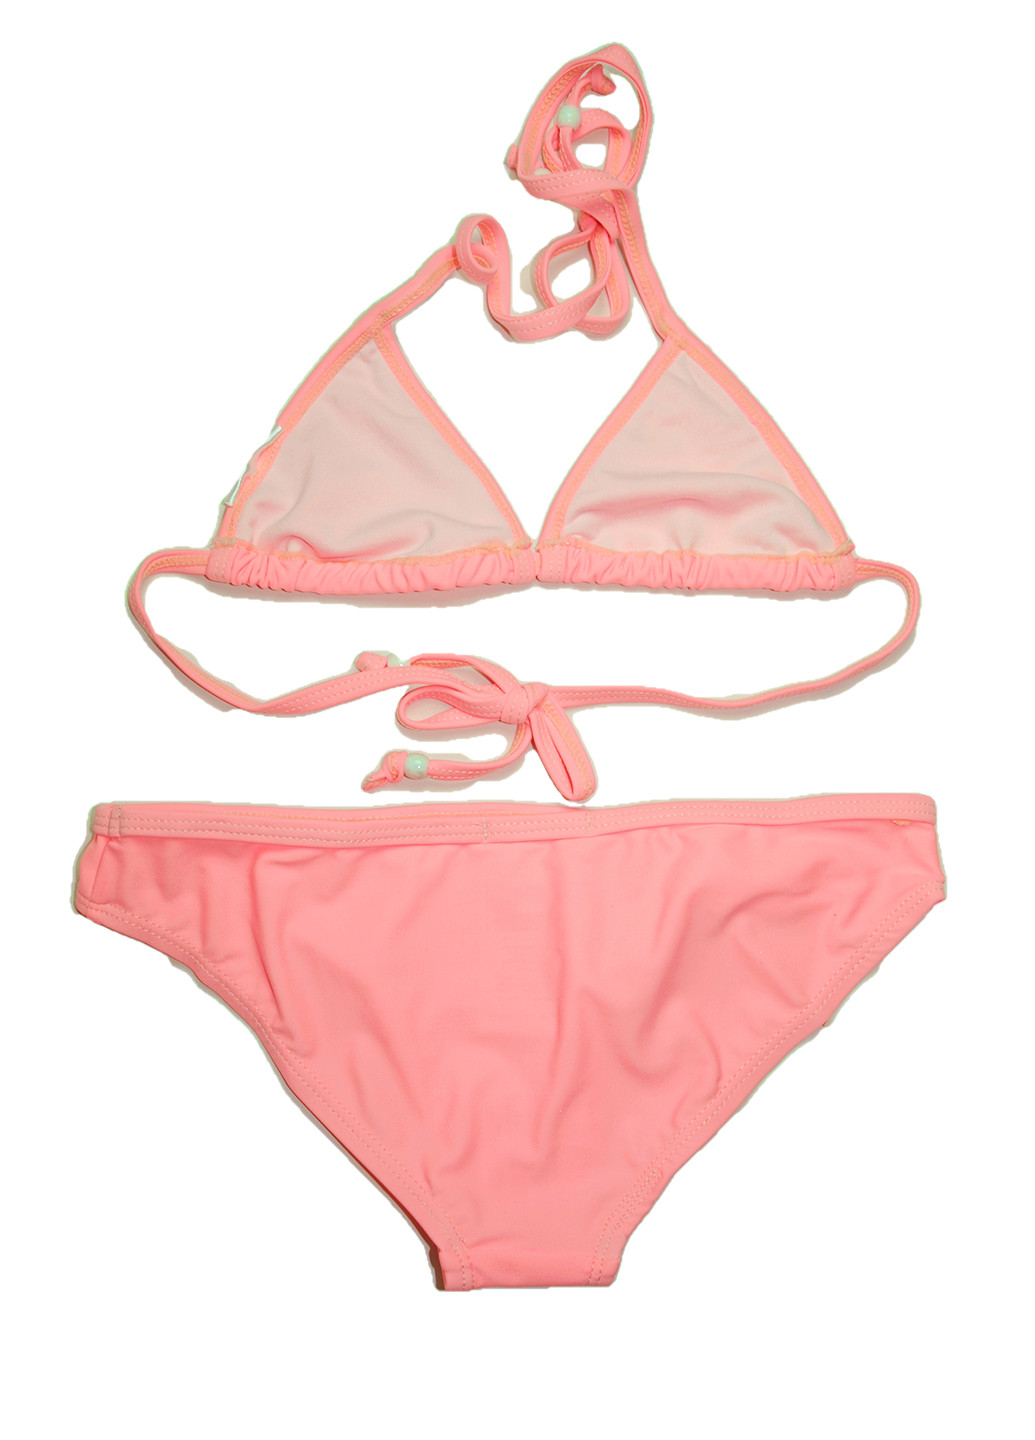 Светло-розовый летний купальник (лиф, трусы) бикини Parah